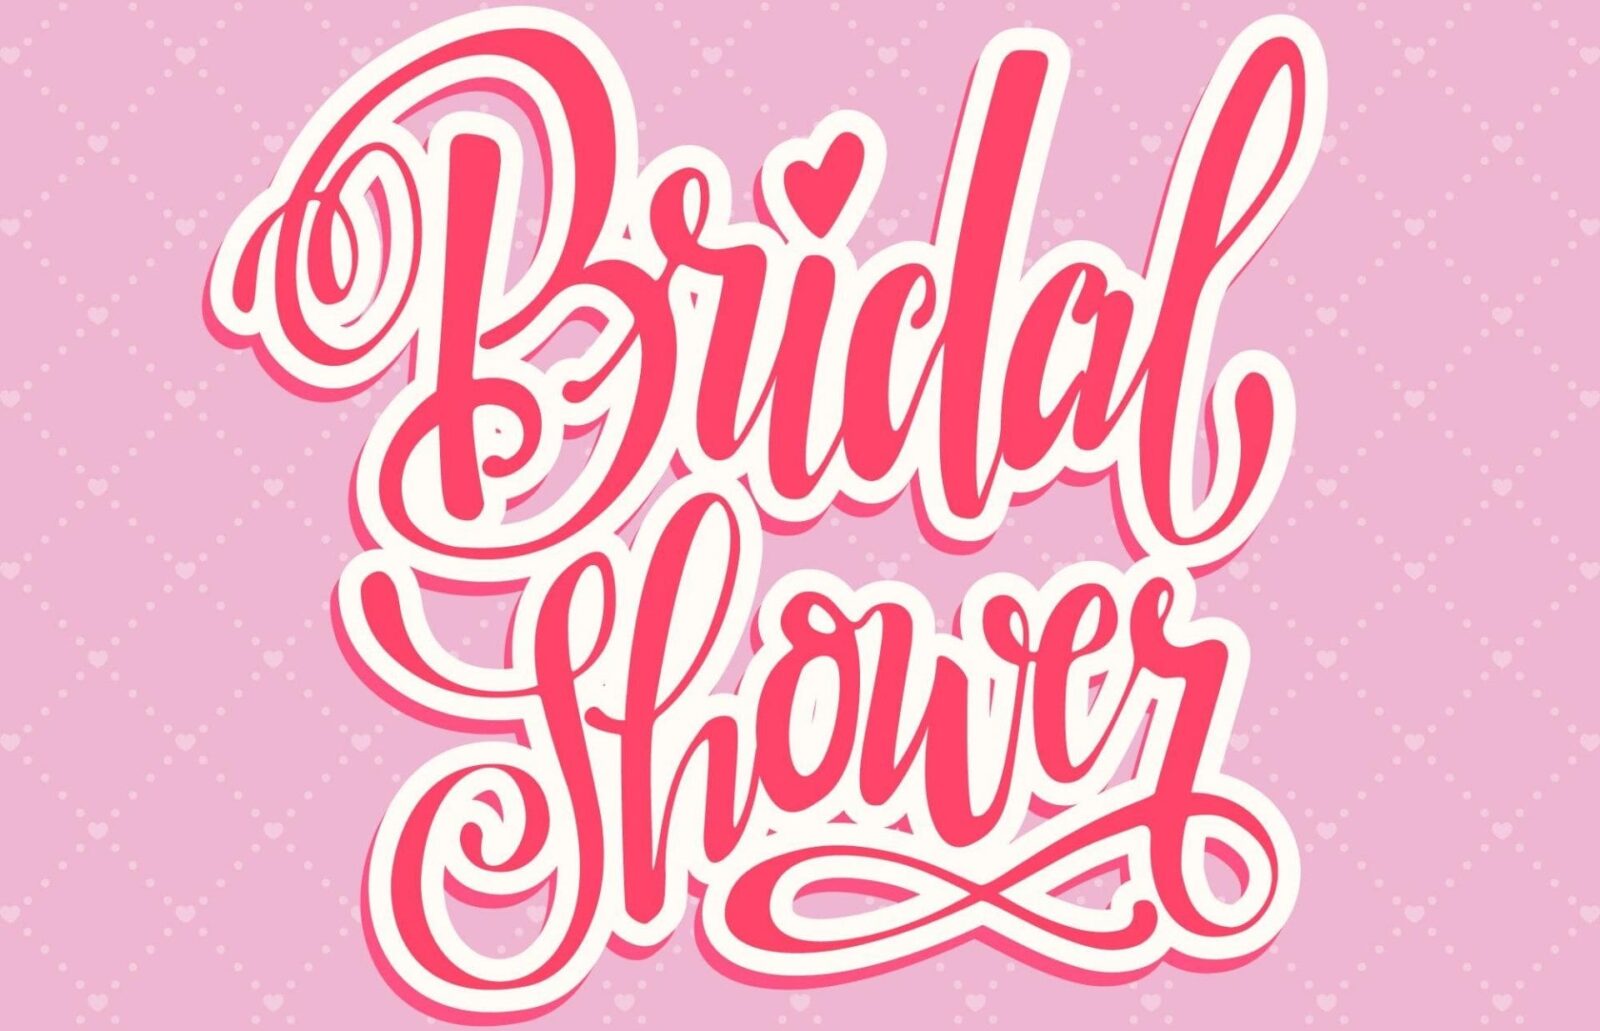 5 Amazing Bridal Shower Ideas #Beverlyhills #beverlyhillsmagazine #bridalshower #celebration #bridalshowerideas #bridalshowerthemes #bridalshowergiftideas #bridalshowervenue